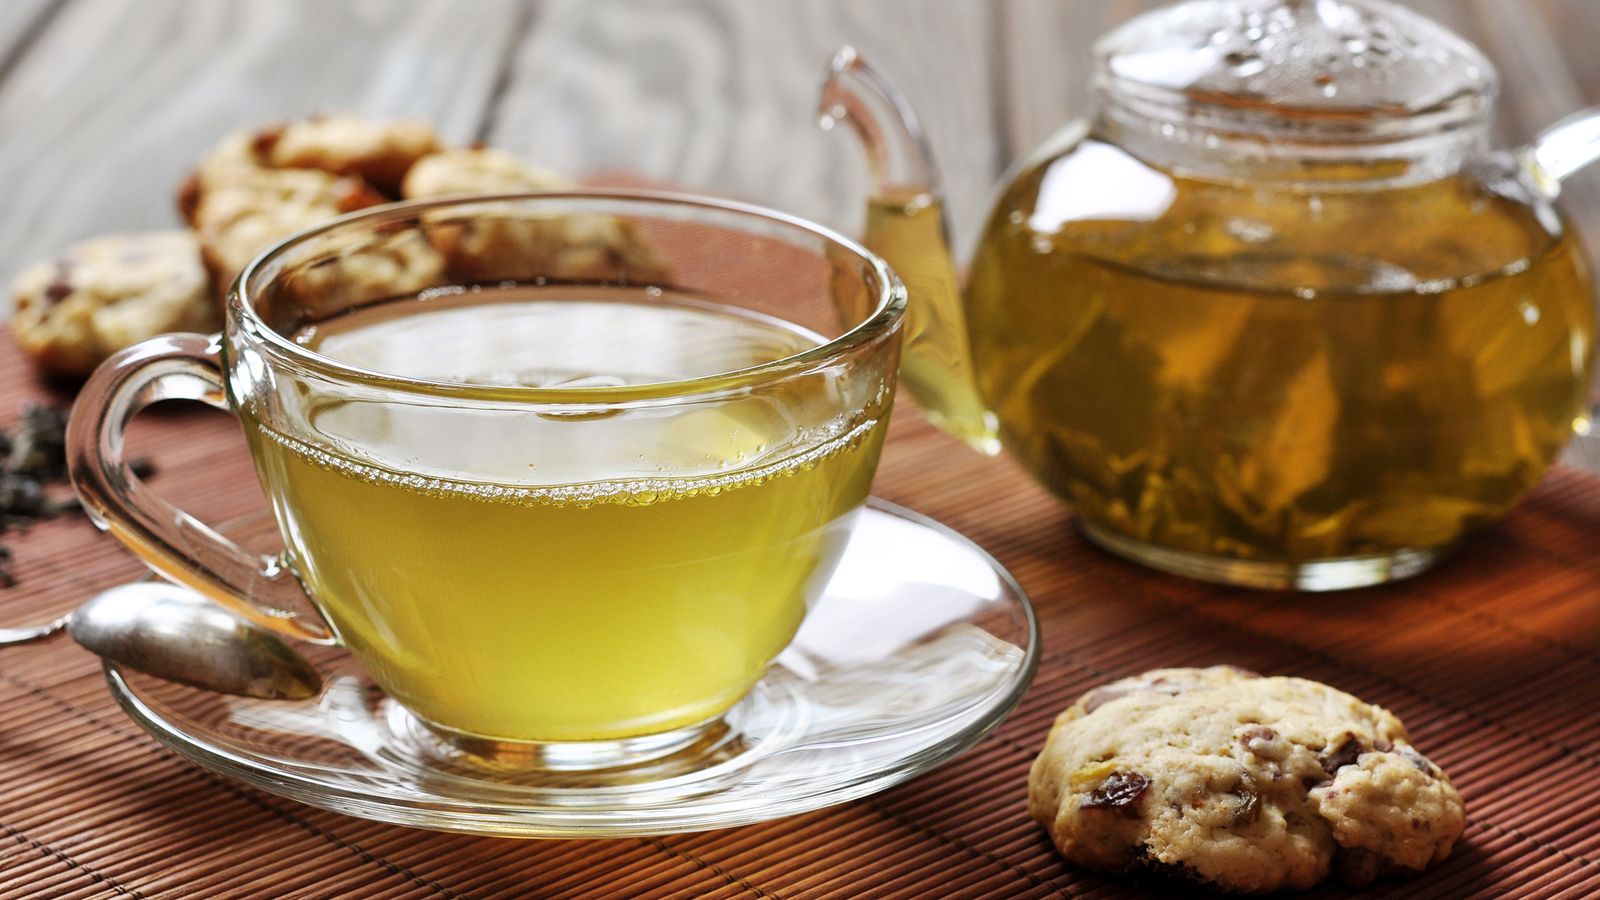 Risiko für Grünen Star sinkt durch heissen Tee